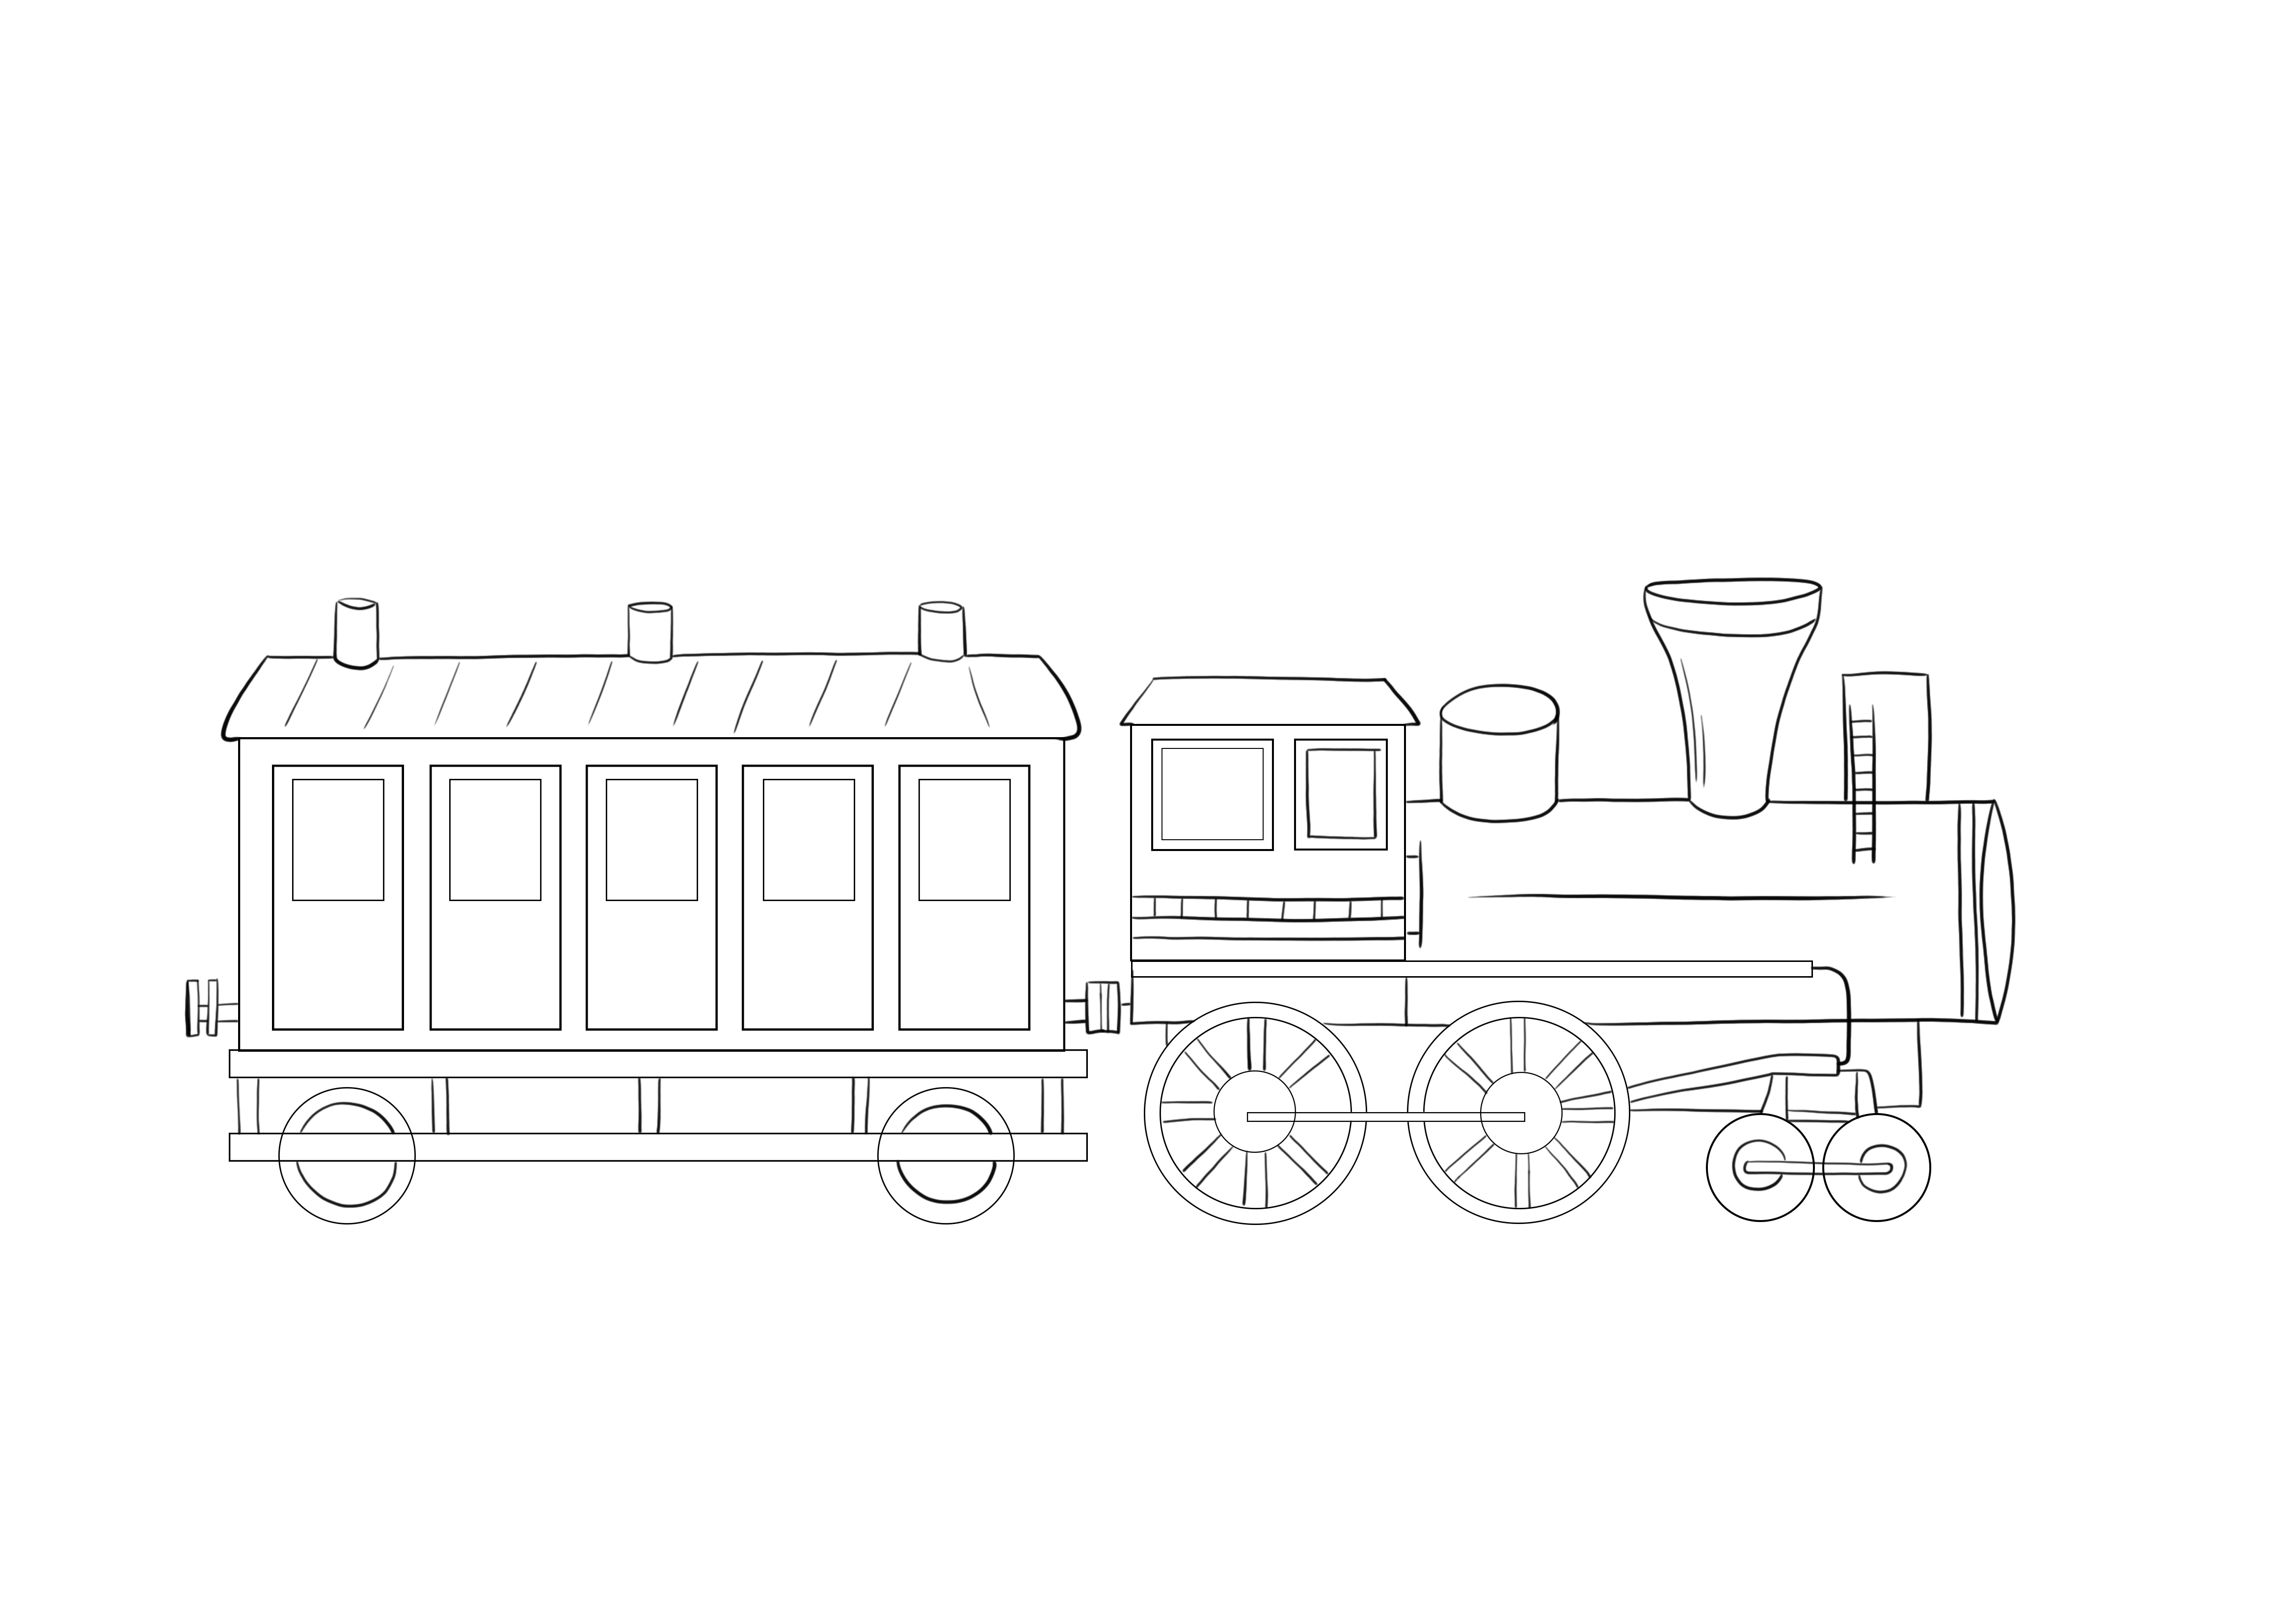 Pociąg i lokomotywa za darmo, aby wydrukować lub zapisać obraz